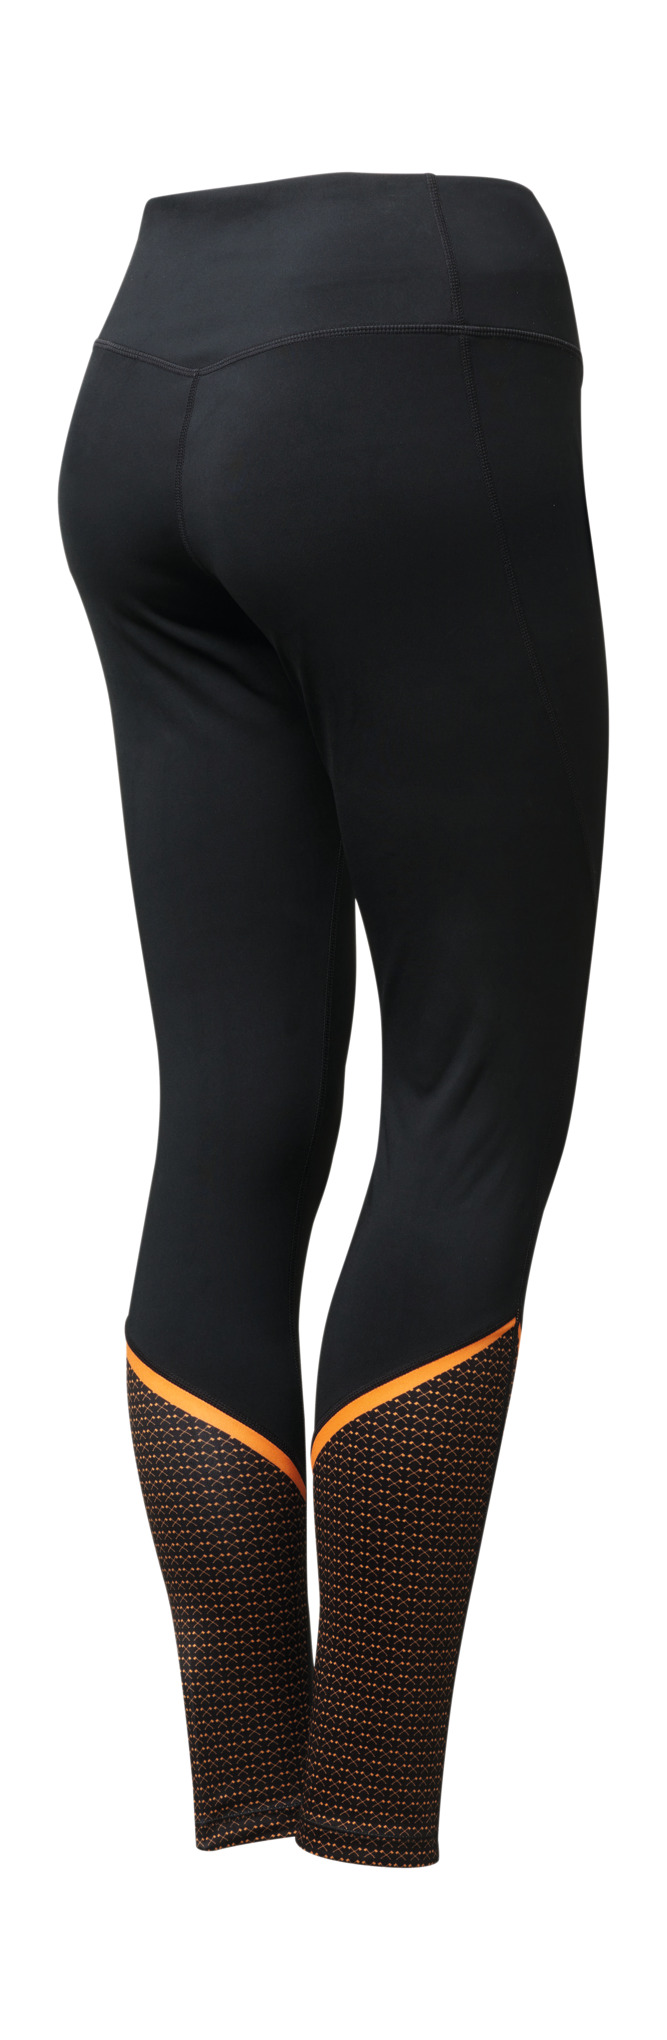 STIHL TIMBERSPORTS® SCORE sports leggings - Women